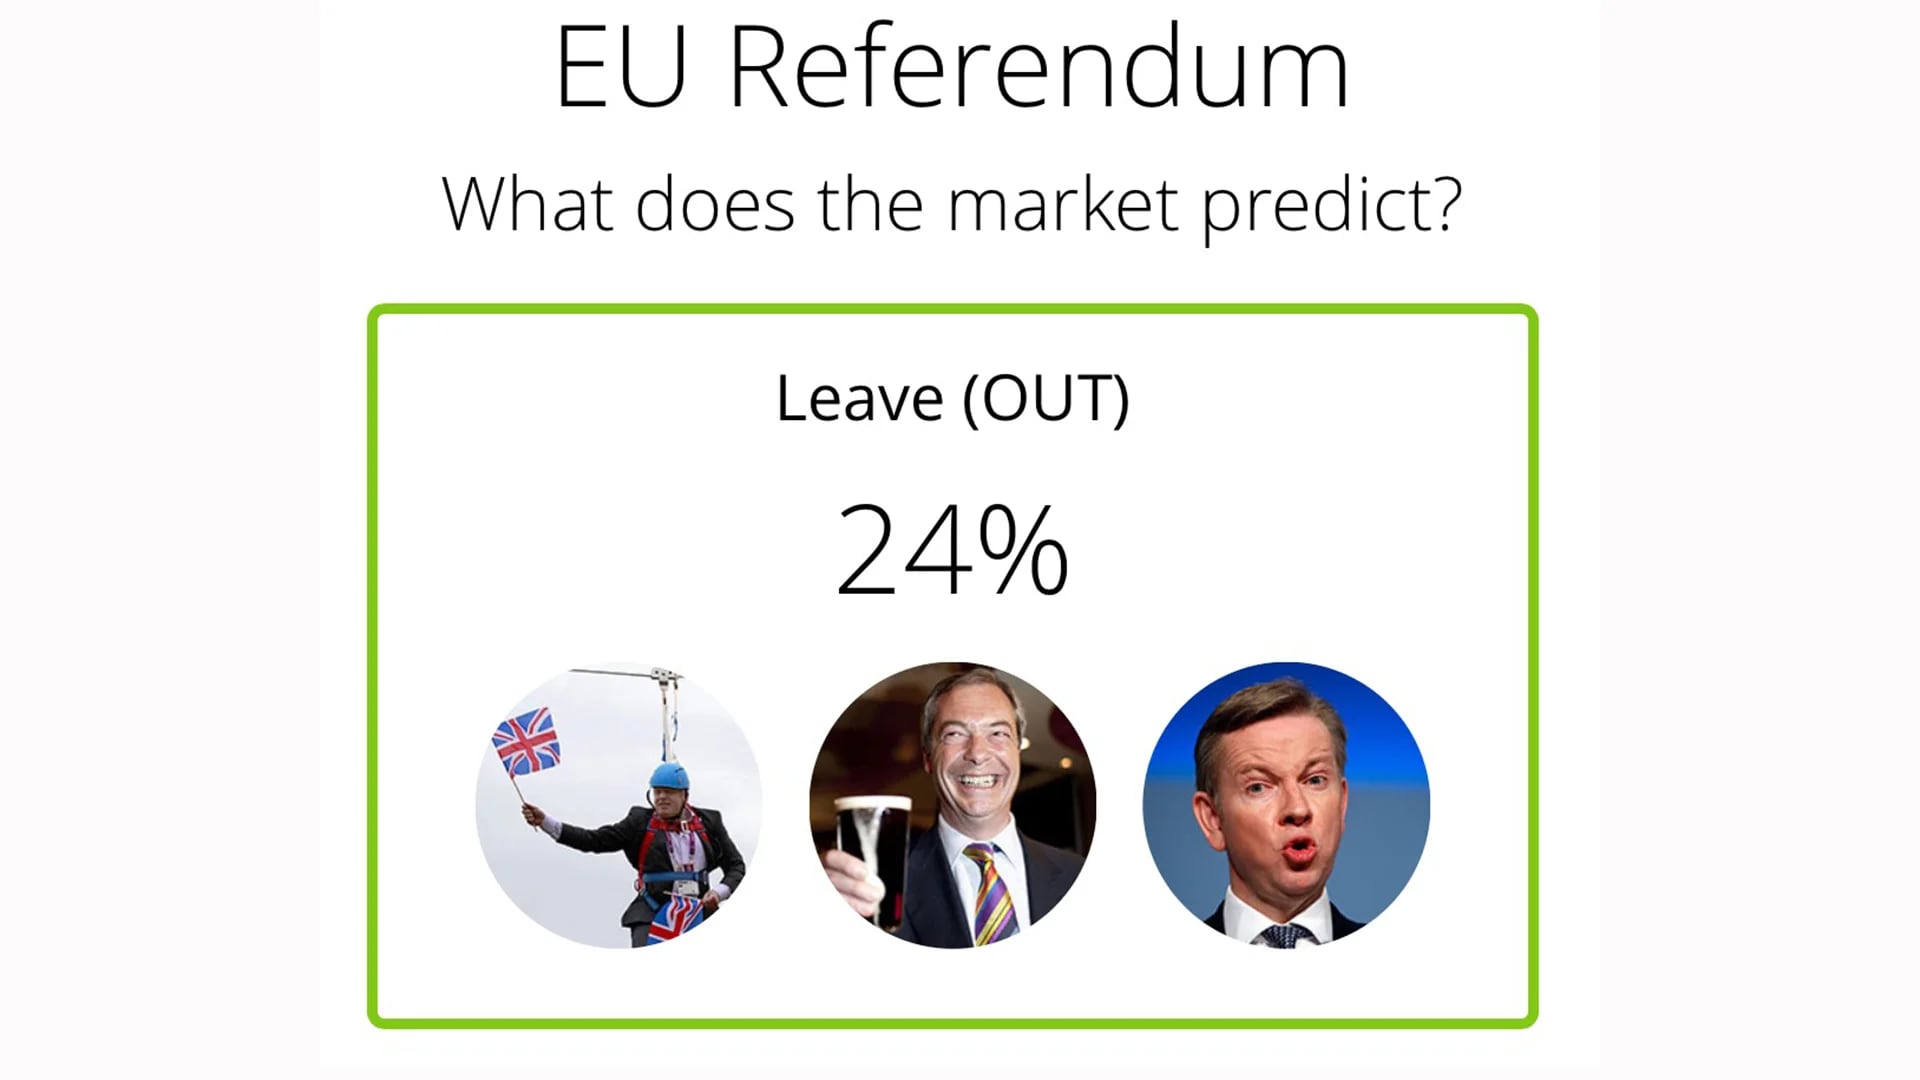 La campaña del Referendum para decidir la salida de la UE (Leave) atrae a un cuarto del mercado